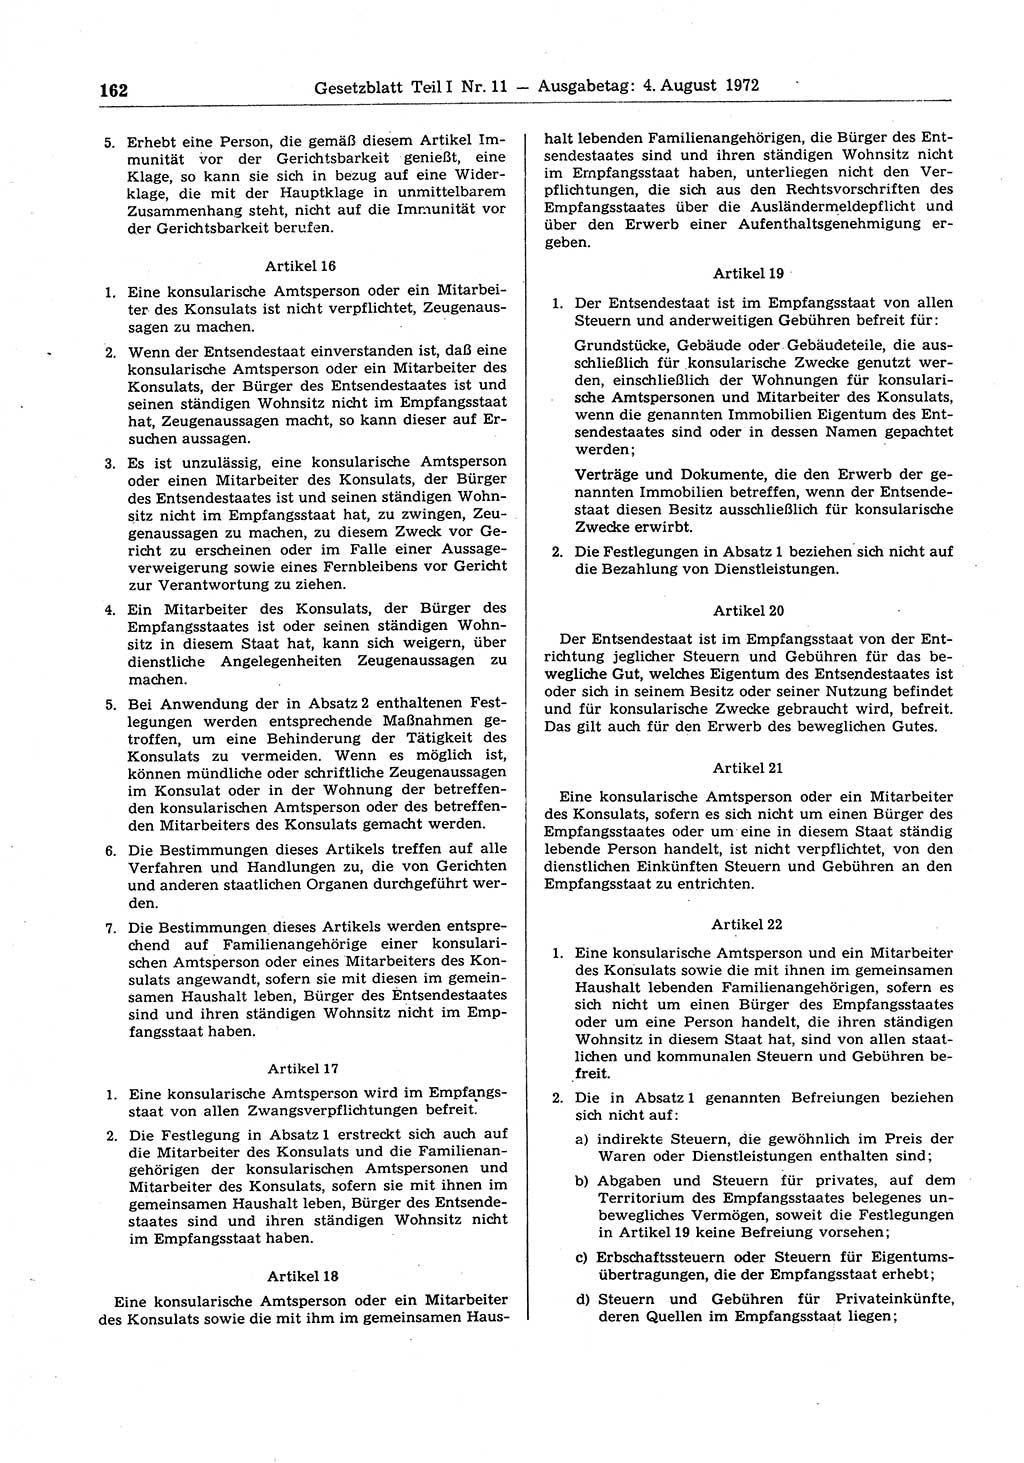 Gesetzblatt (GBl.) der Deutschen Demokratischen Republik (DDR) Teil Ⅰ 1972, Seite 162 (GBl. DDR Ⅰ 1972, S. 162)